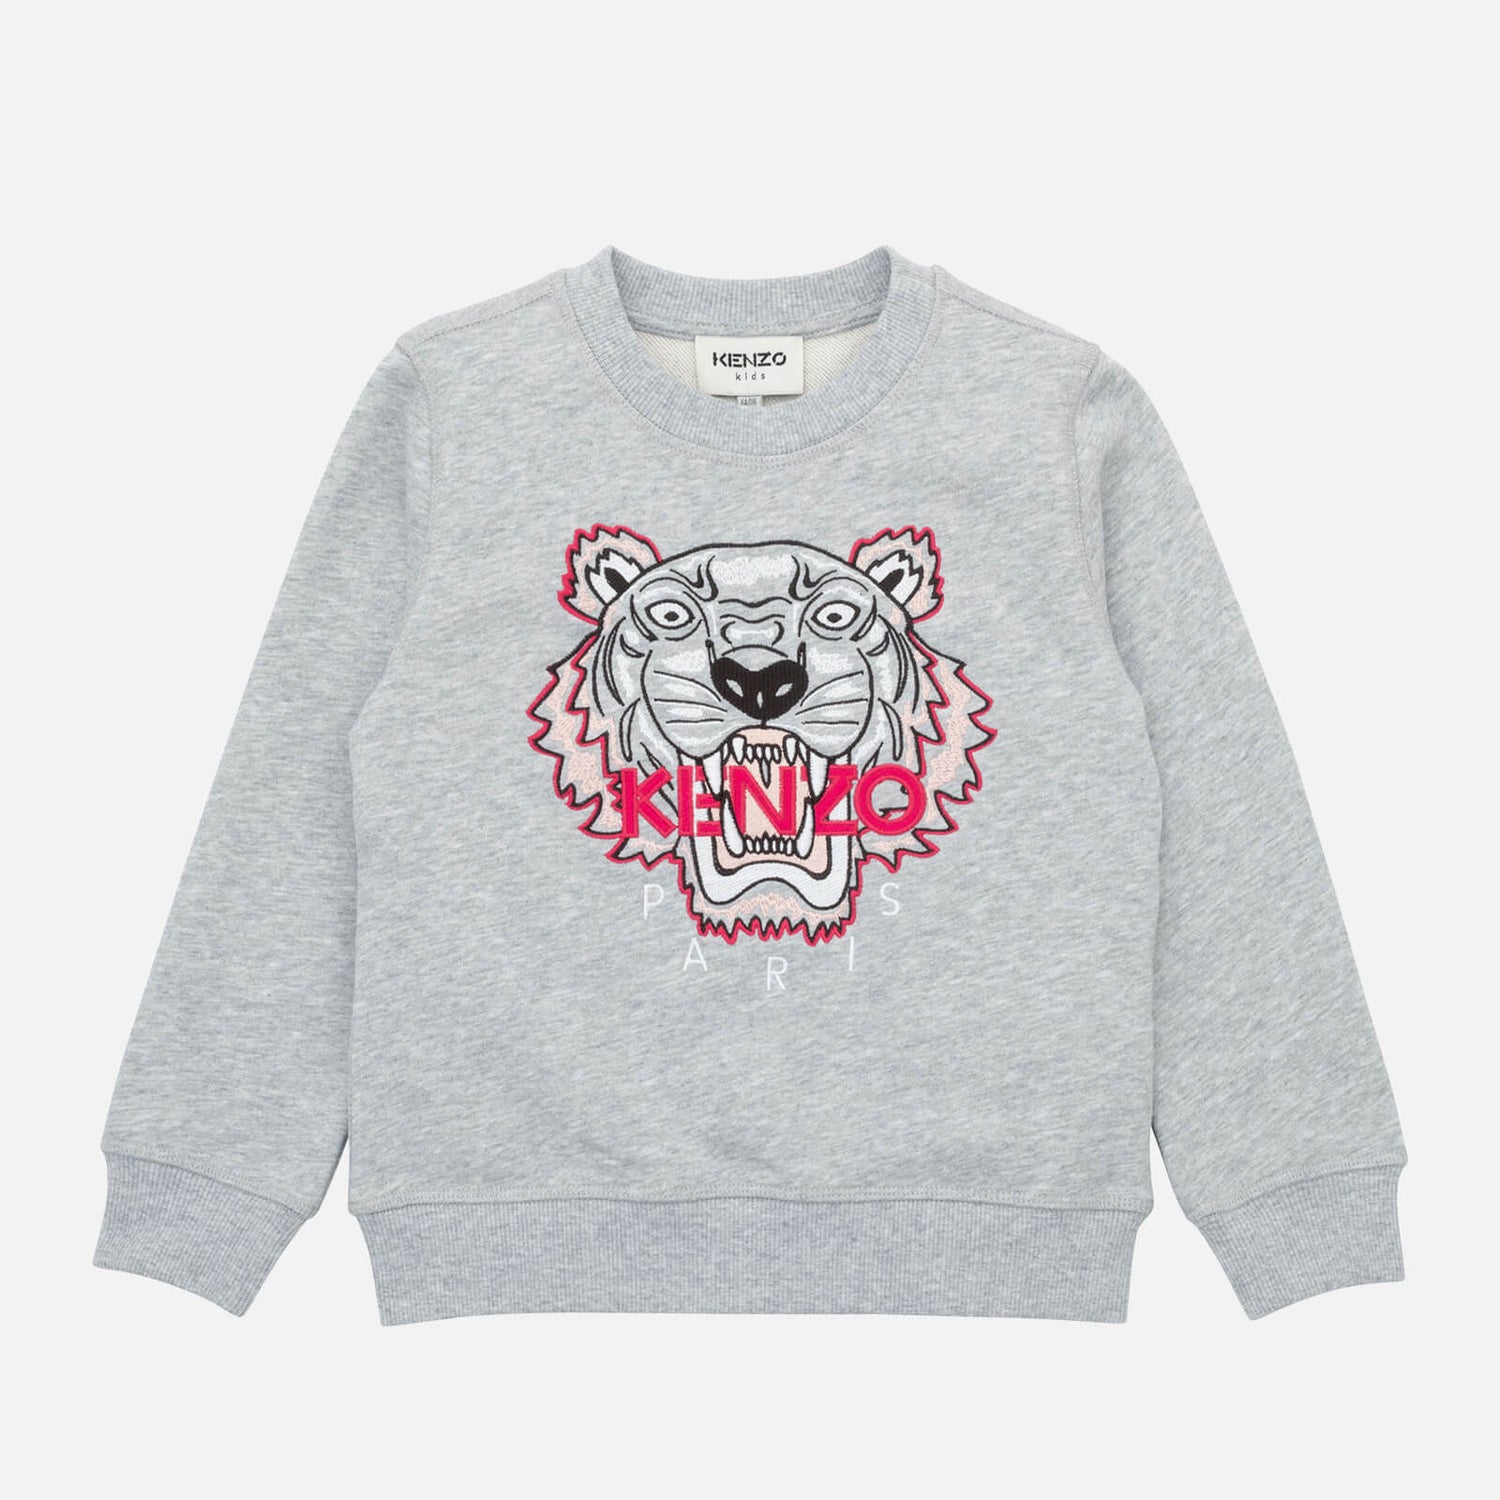 KENZO Girls Cotton-Jersey Sweatshirt - 4 Years